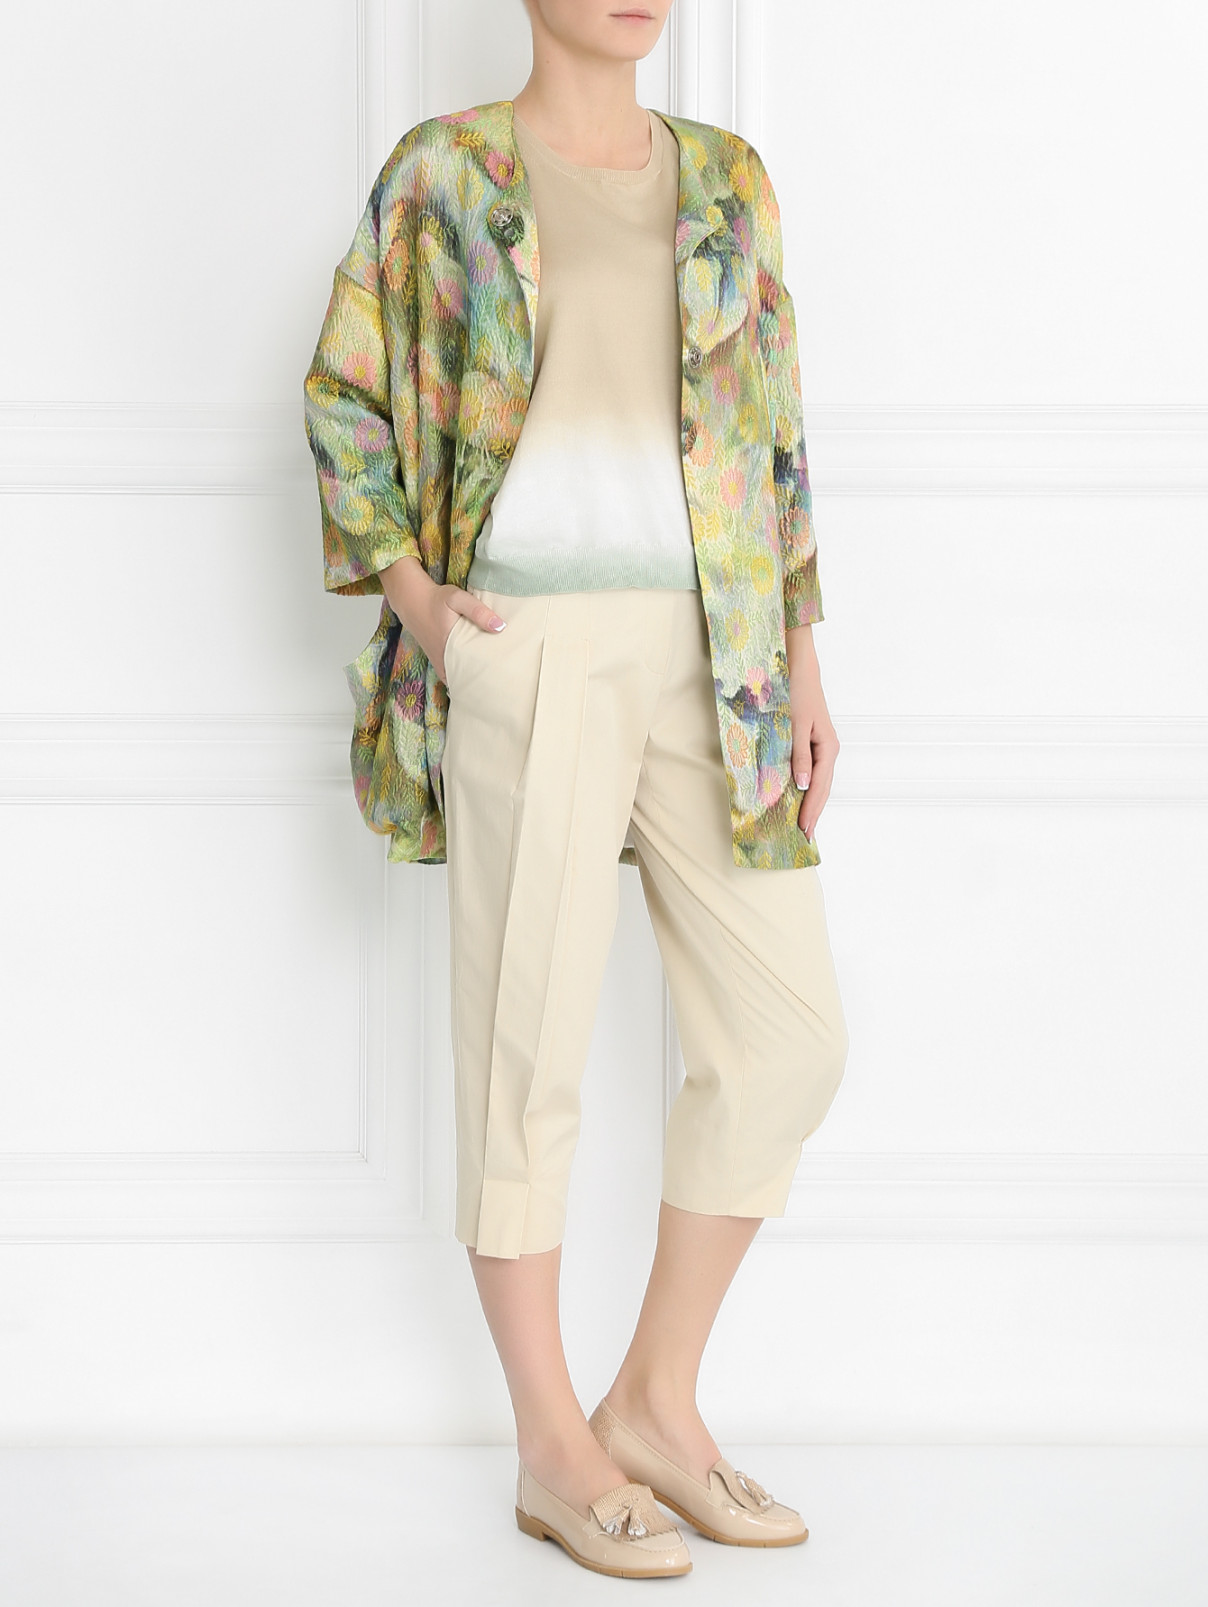 Пальто с цветочным узором и боковыми карманами Femme by Michele R.  –  Модель Общий вид  – Цвет:  Узор